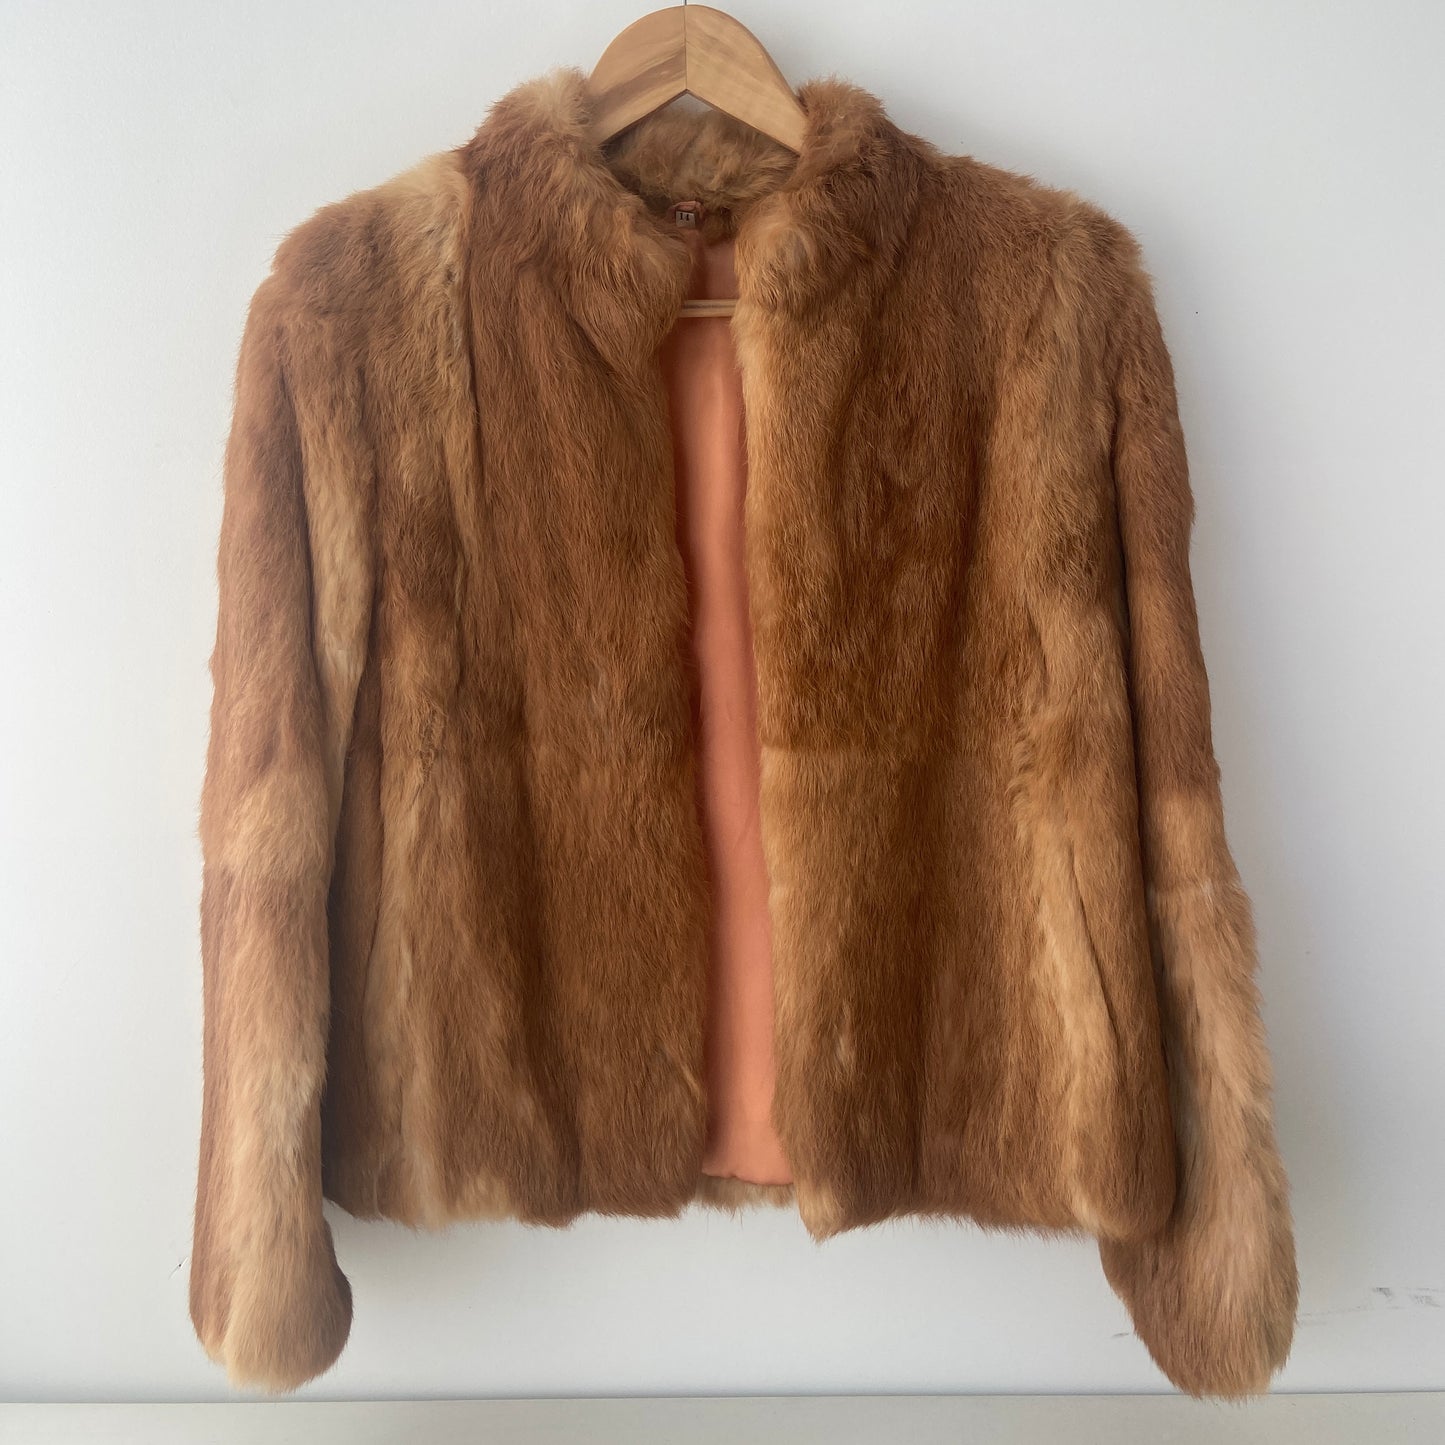 VINTAGE Fur Coat Soft & Clean Amazing Colour